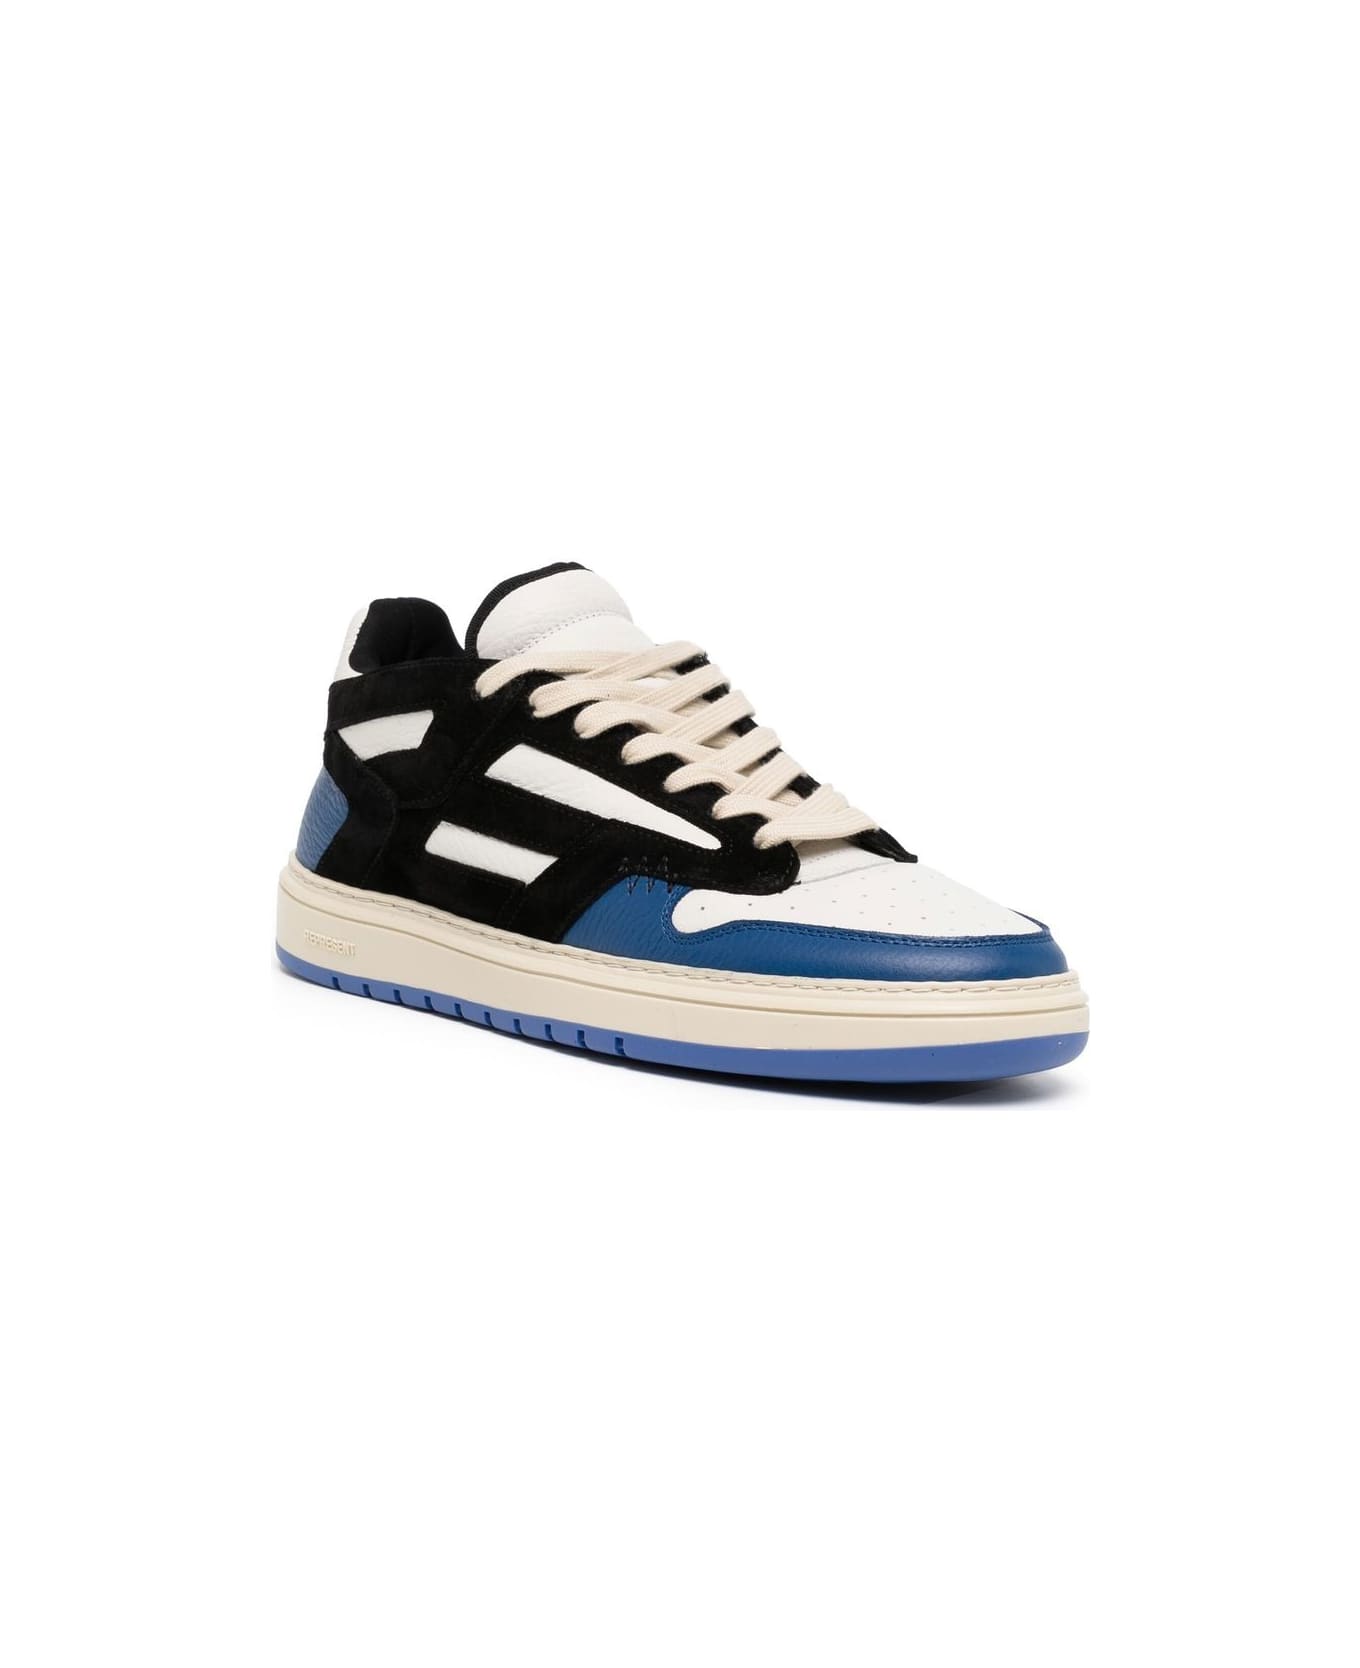 REPRESENT Reptor Low Sneakers - Black Cobalt Blue